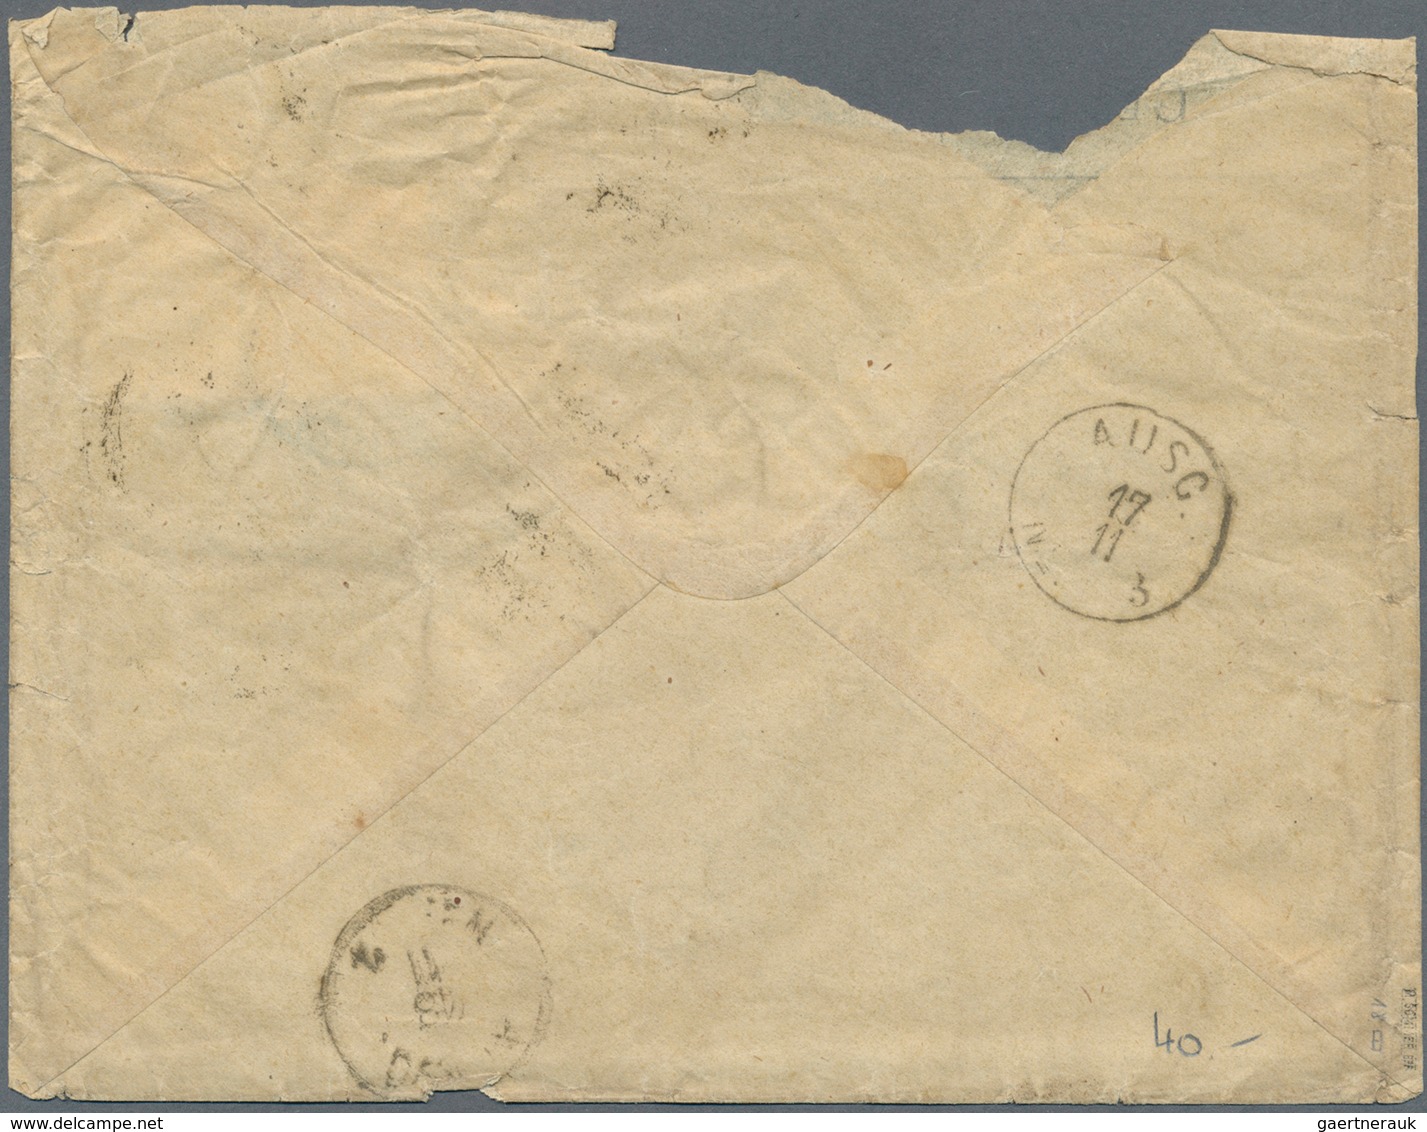 17869 Deutsches Reich - Brustschild: 1875, Fünf Brustschild-Marken, eine GA und ein Brief mit Reichspost-N